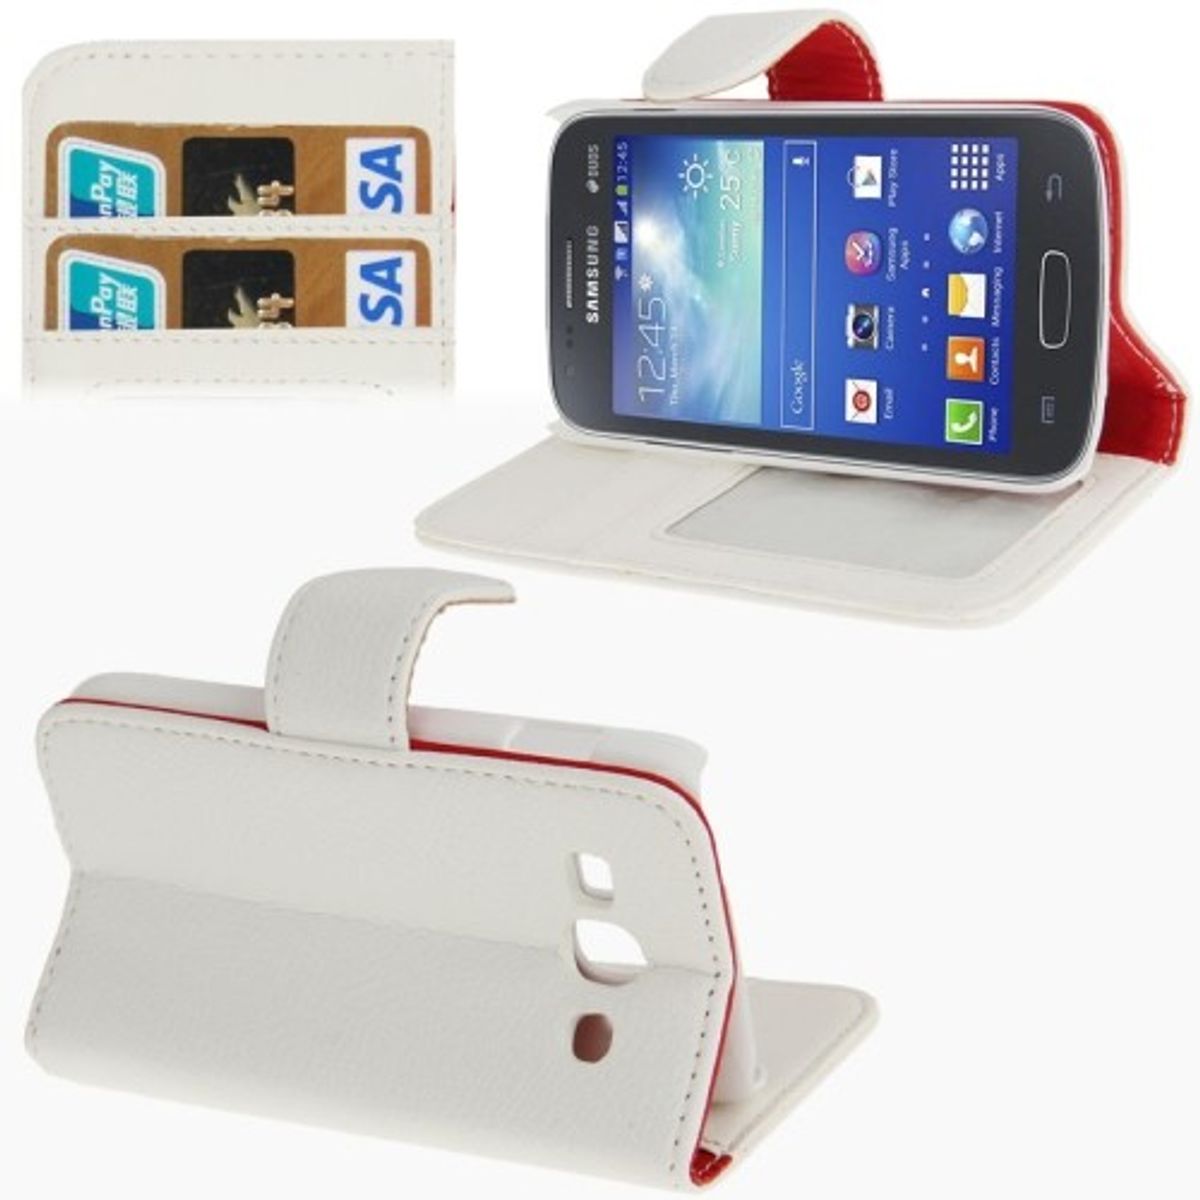 Schutzhülle (Flip Quer) für Handy Samsung Galaxy Ace 3 S7272 Weiß